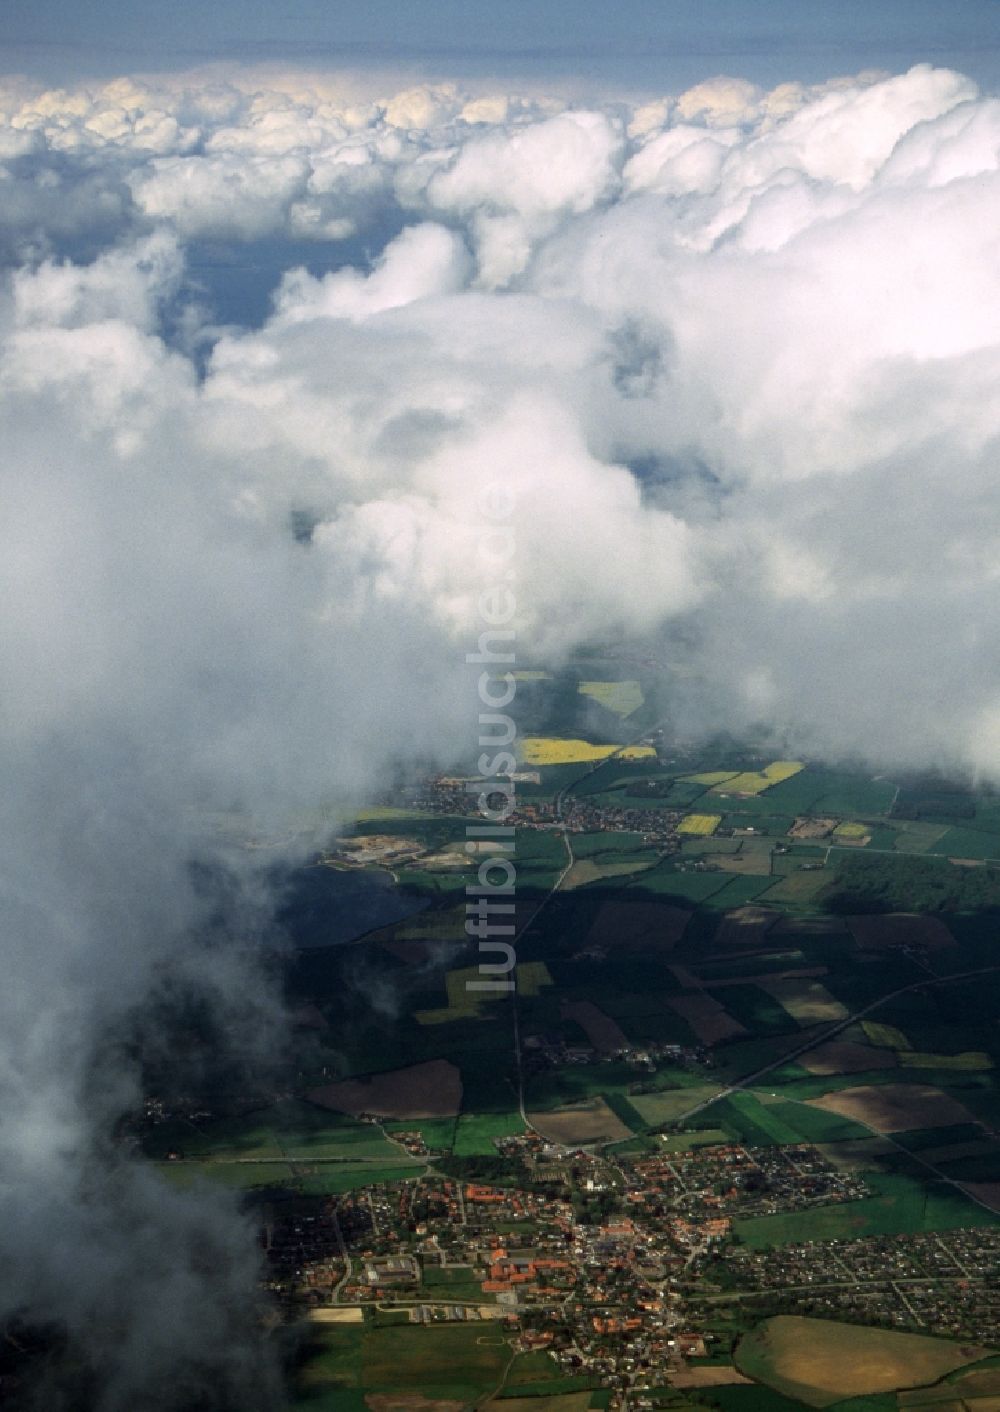 Broager aus der Vogelperspektive: Wetterlage mit Wolkenbildung in Broager in Region Syddanmark, Dänemark